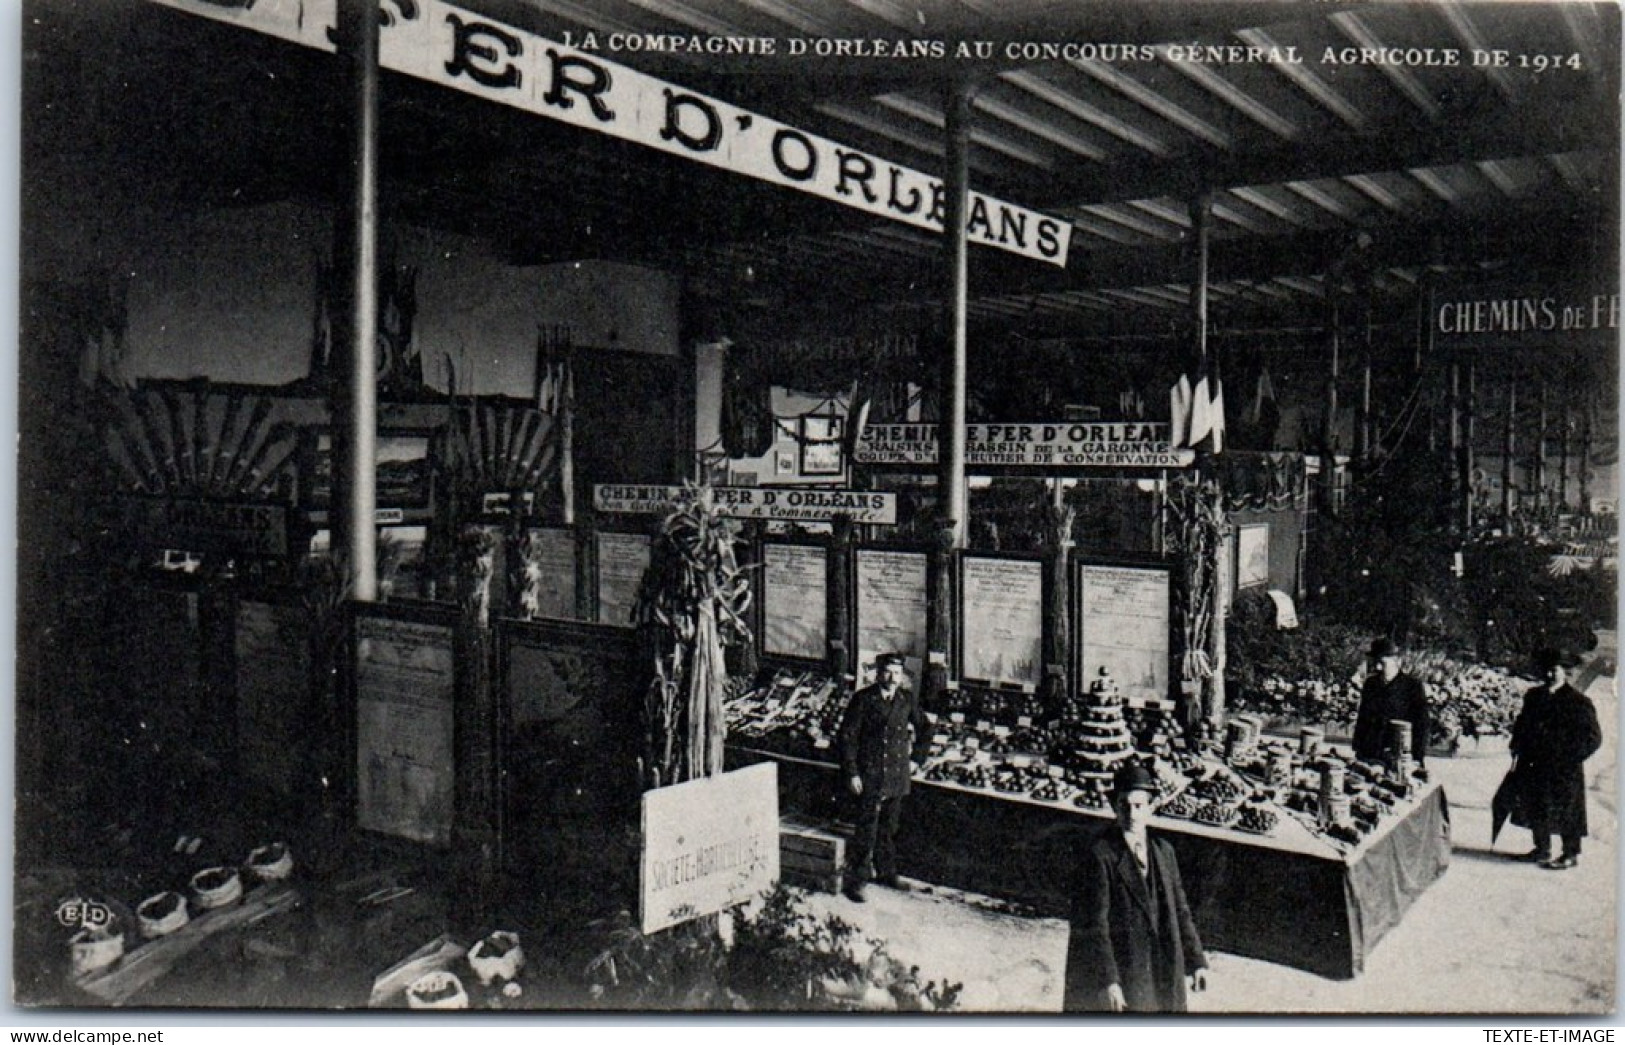 75 PARIS - Expo Agricole De 1914, Cie D'orleans Les Stands  - Tentoonstellingen